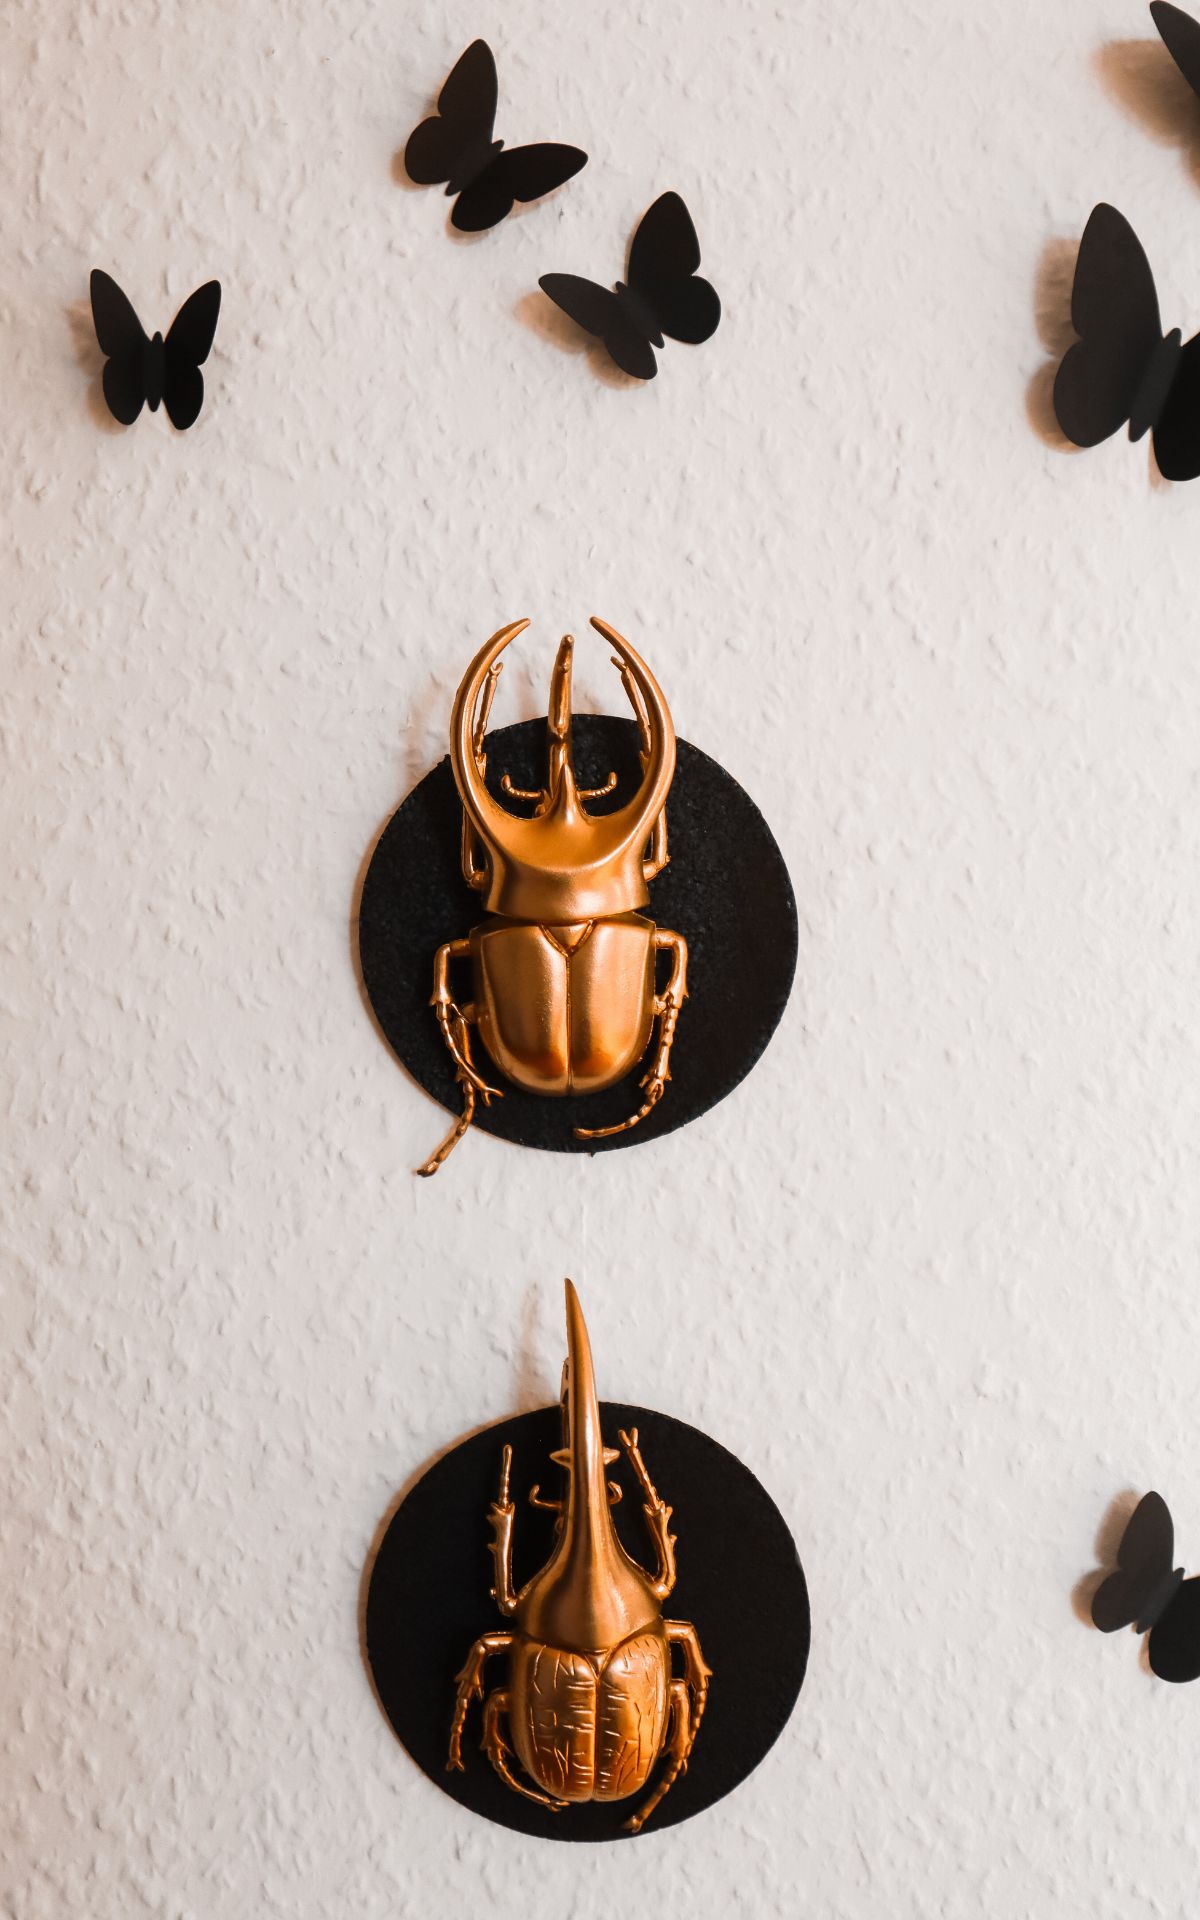 Verpasse deiner Deko zu Halloween einen Hauch von Eleganz mit dieser vergoldeten DIY Insekten-Galerie! Die perfekte Halloween Deko zum Einfach-Selber-Machen.